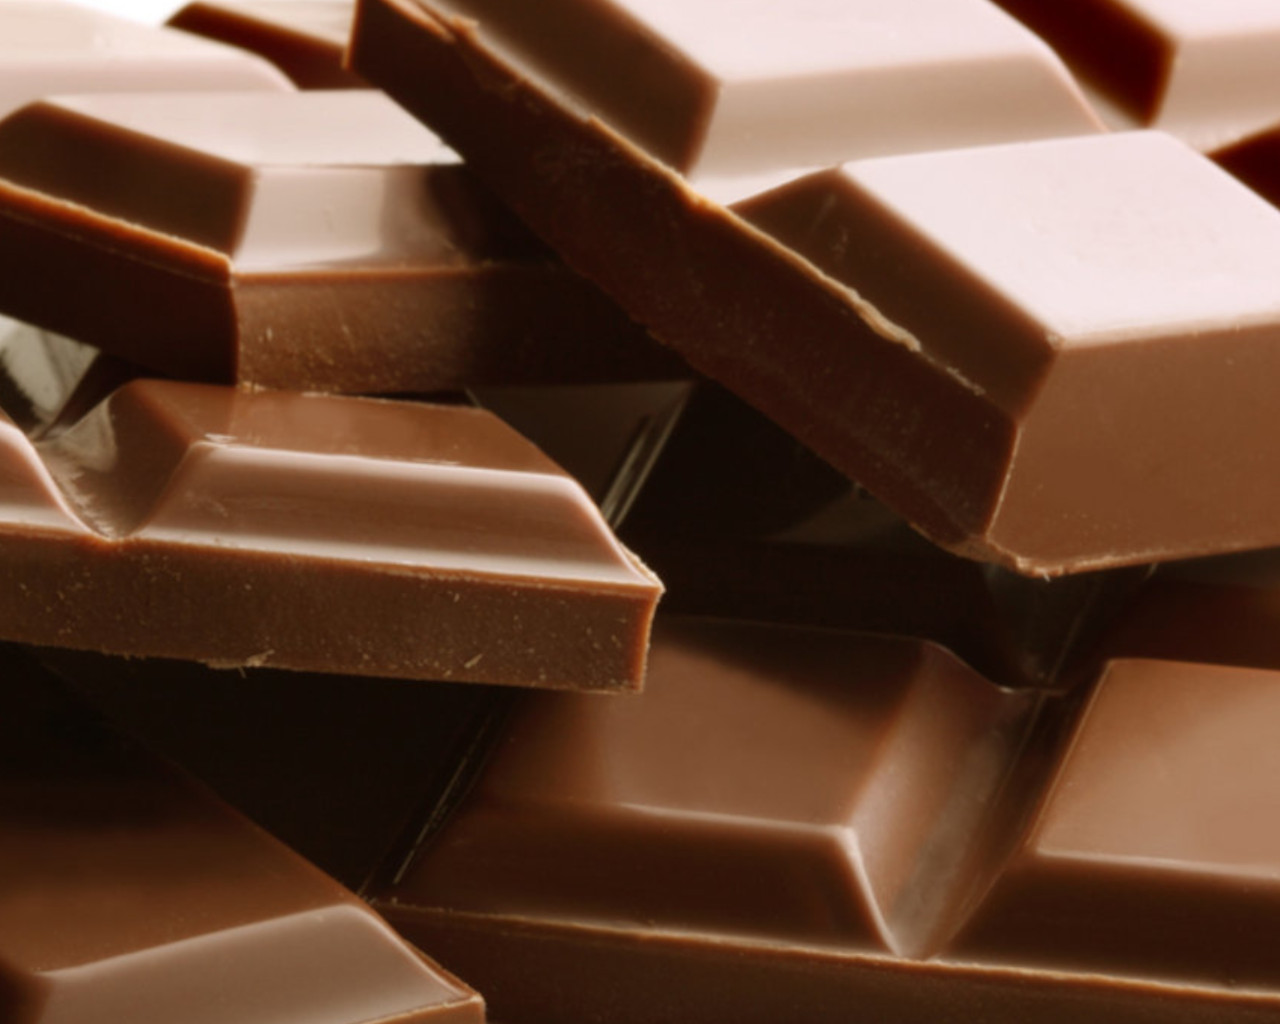 σοκολατα,σοκολατα,σοκολατακια,σοκολατα ονειροκριτησ,σοκολατακια ακησ,σοκολατα ροφημα,σοκολατα θερμιδεσ,σοκολατα χωρισ ζαχαρη,σοκολατα ζαχαροπλαστειο